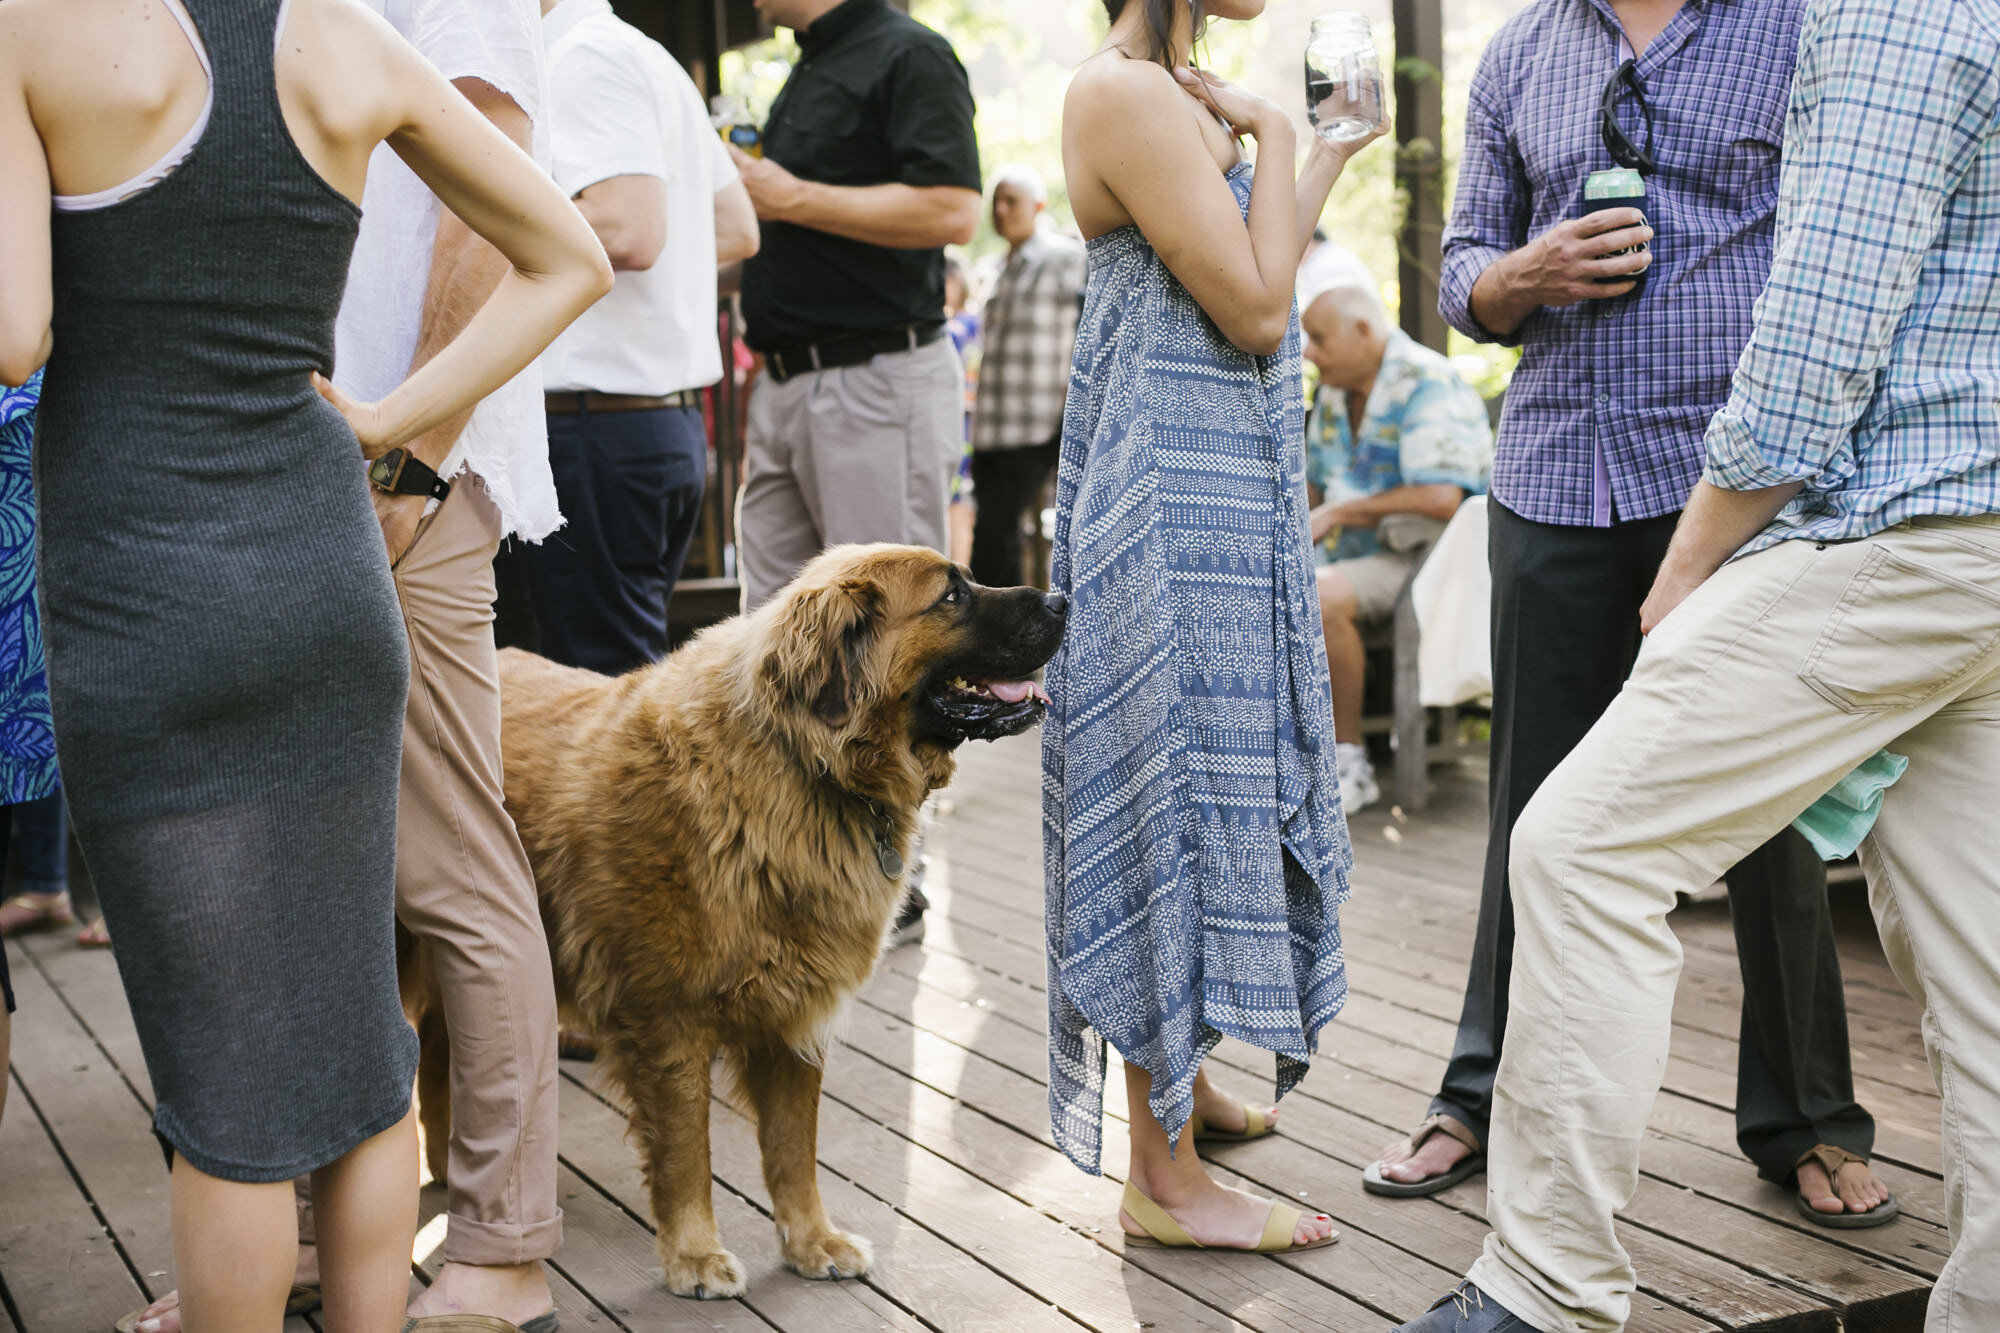 Backyard wedding reception in Sonoma California with big friendly dog